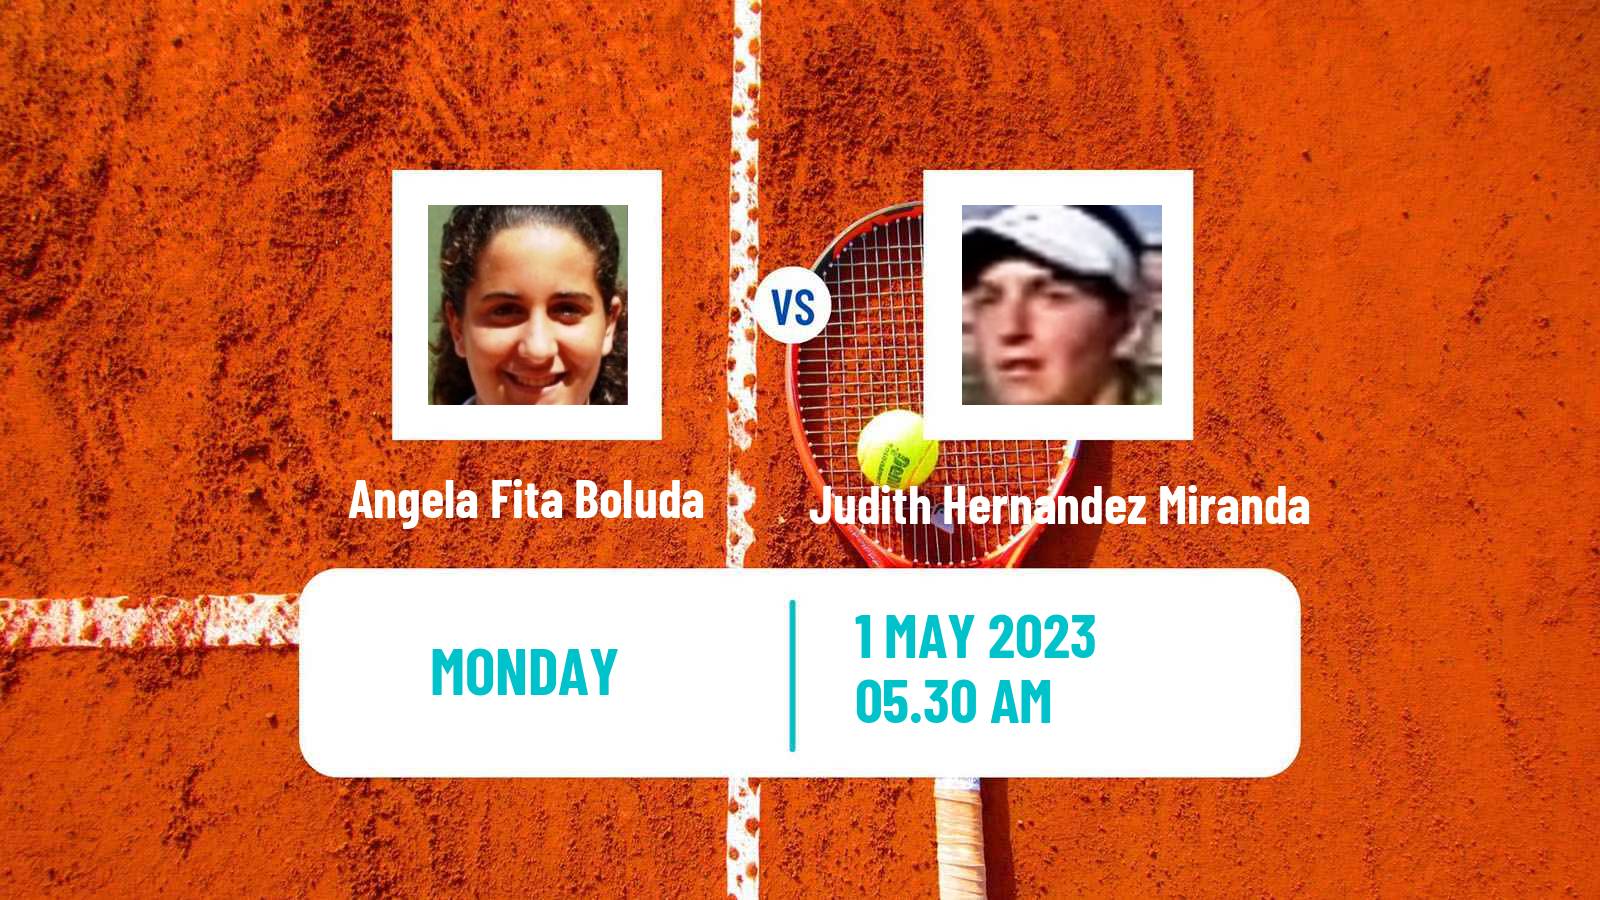 Tennis ATP Challenger Angela Fita Boluda - Judith Hernandez Miranda